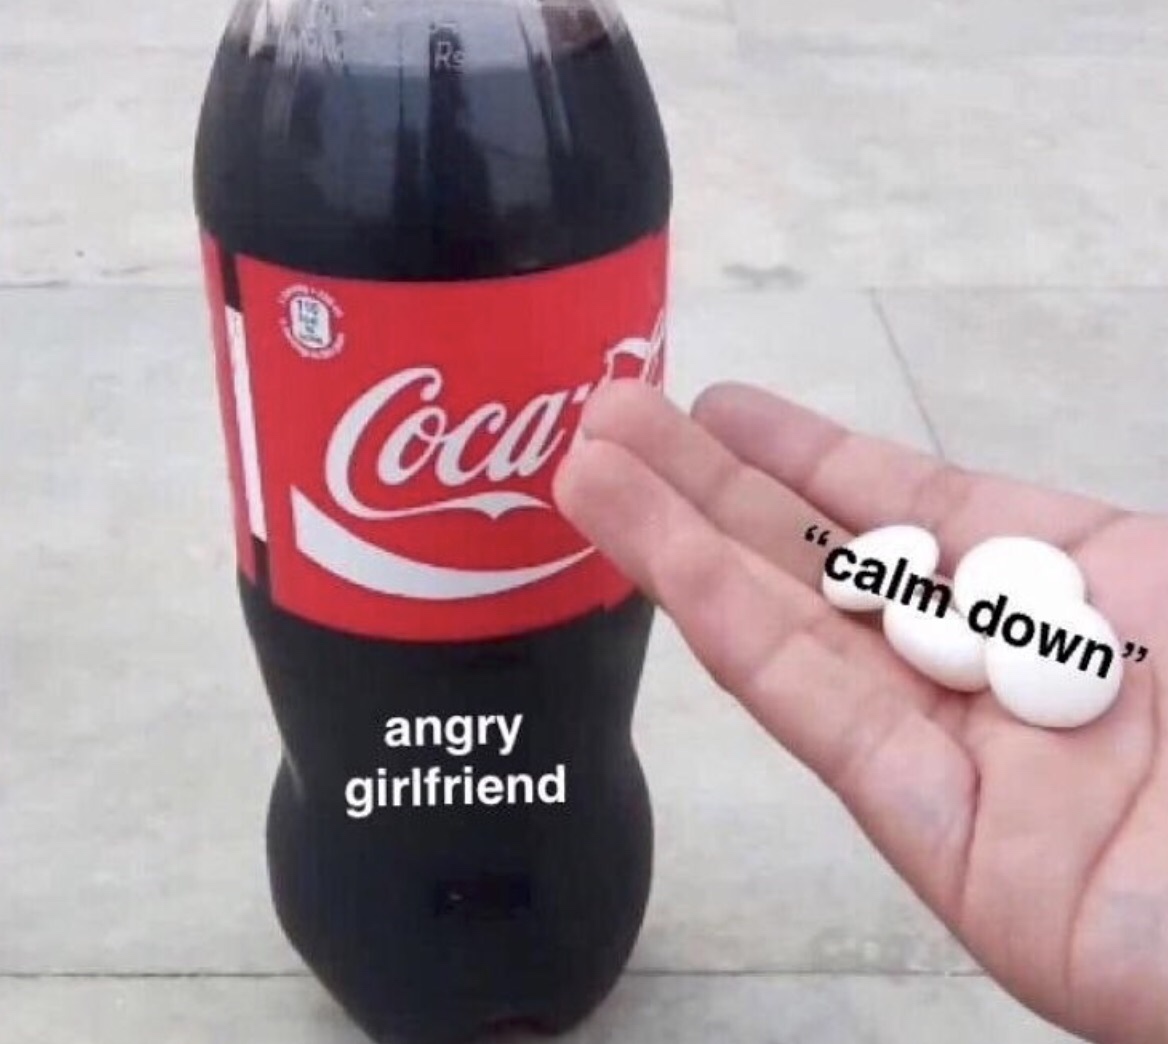 coca cola - Coca "calm down" angry girlfriend